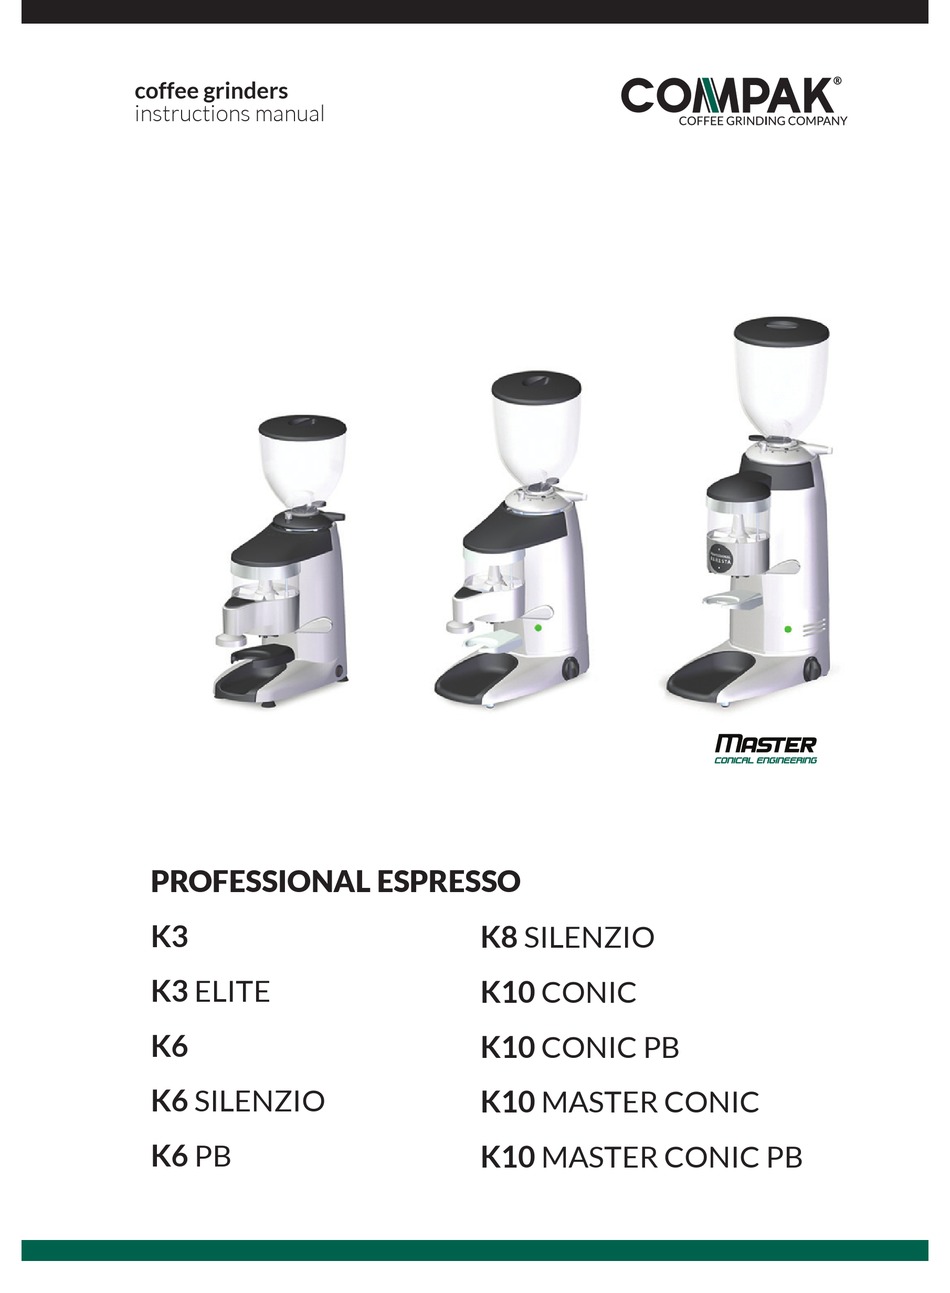 K3-Push K3-Touch für Kaffeebohnenbehälter ø 162mm K3 Compak Deckel für Kaffeemühle K3-Elite K3-Shop